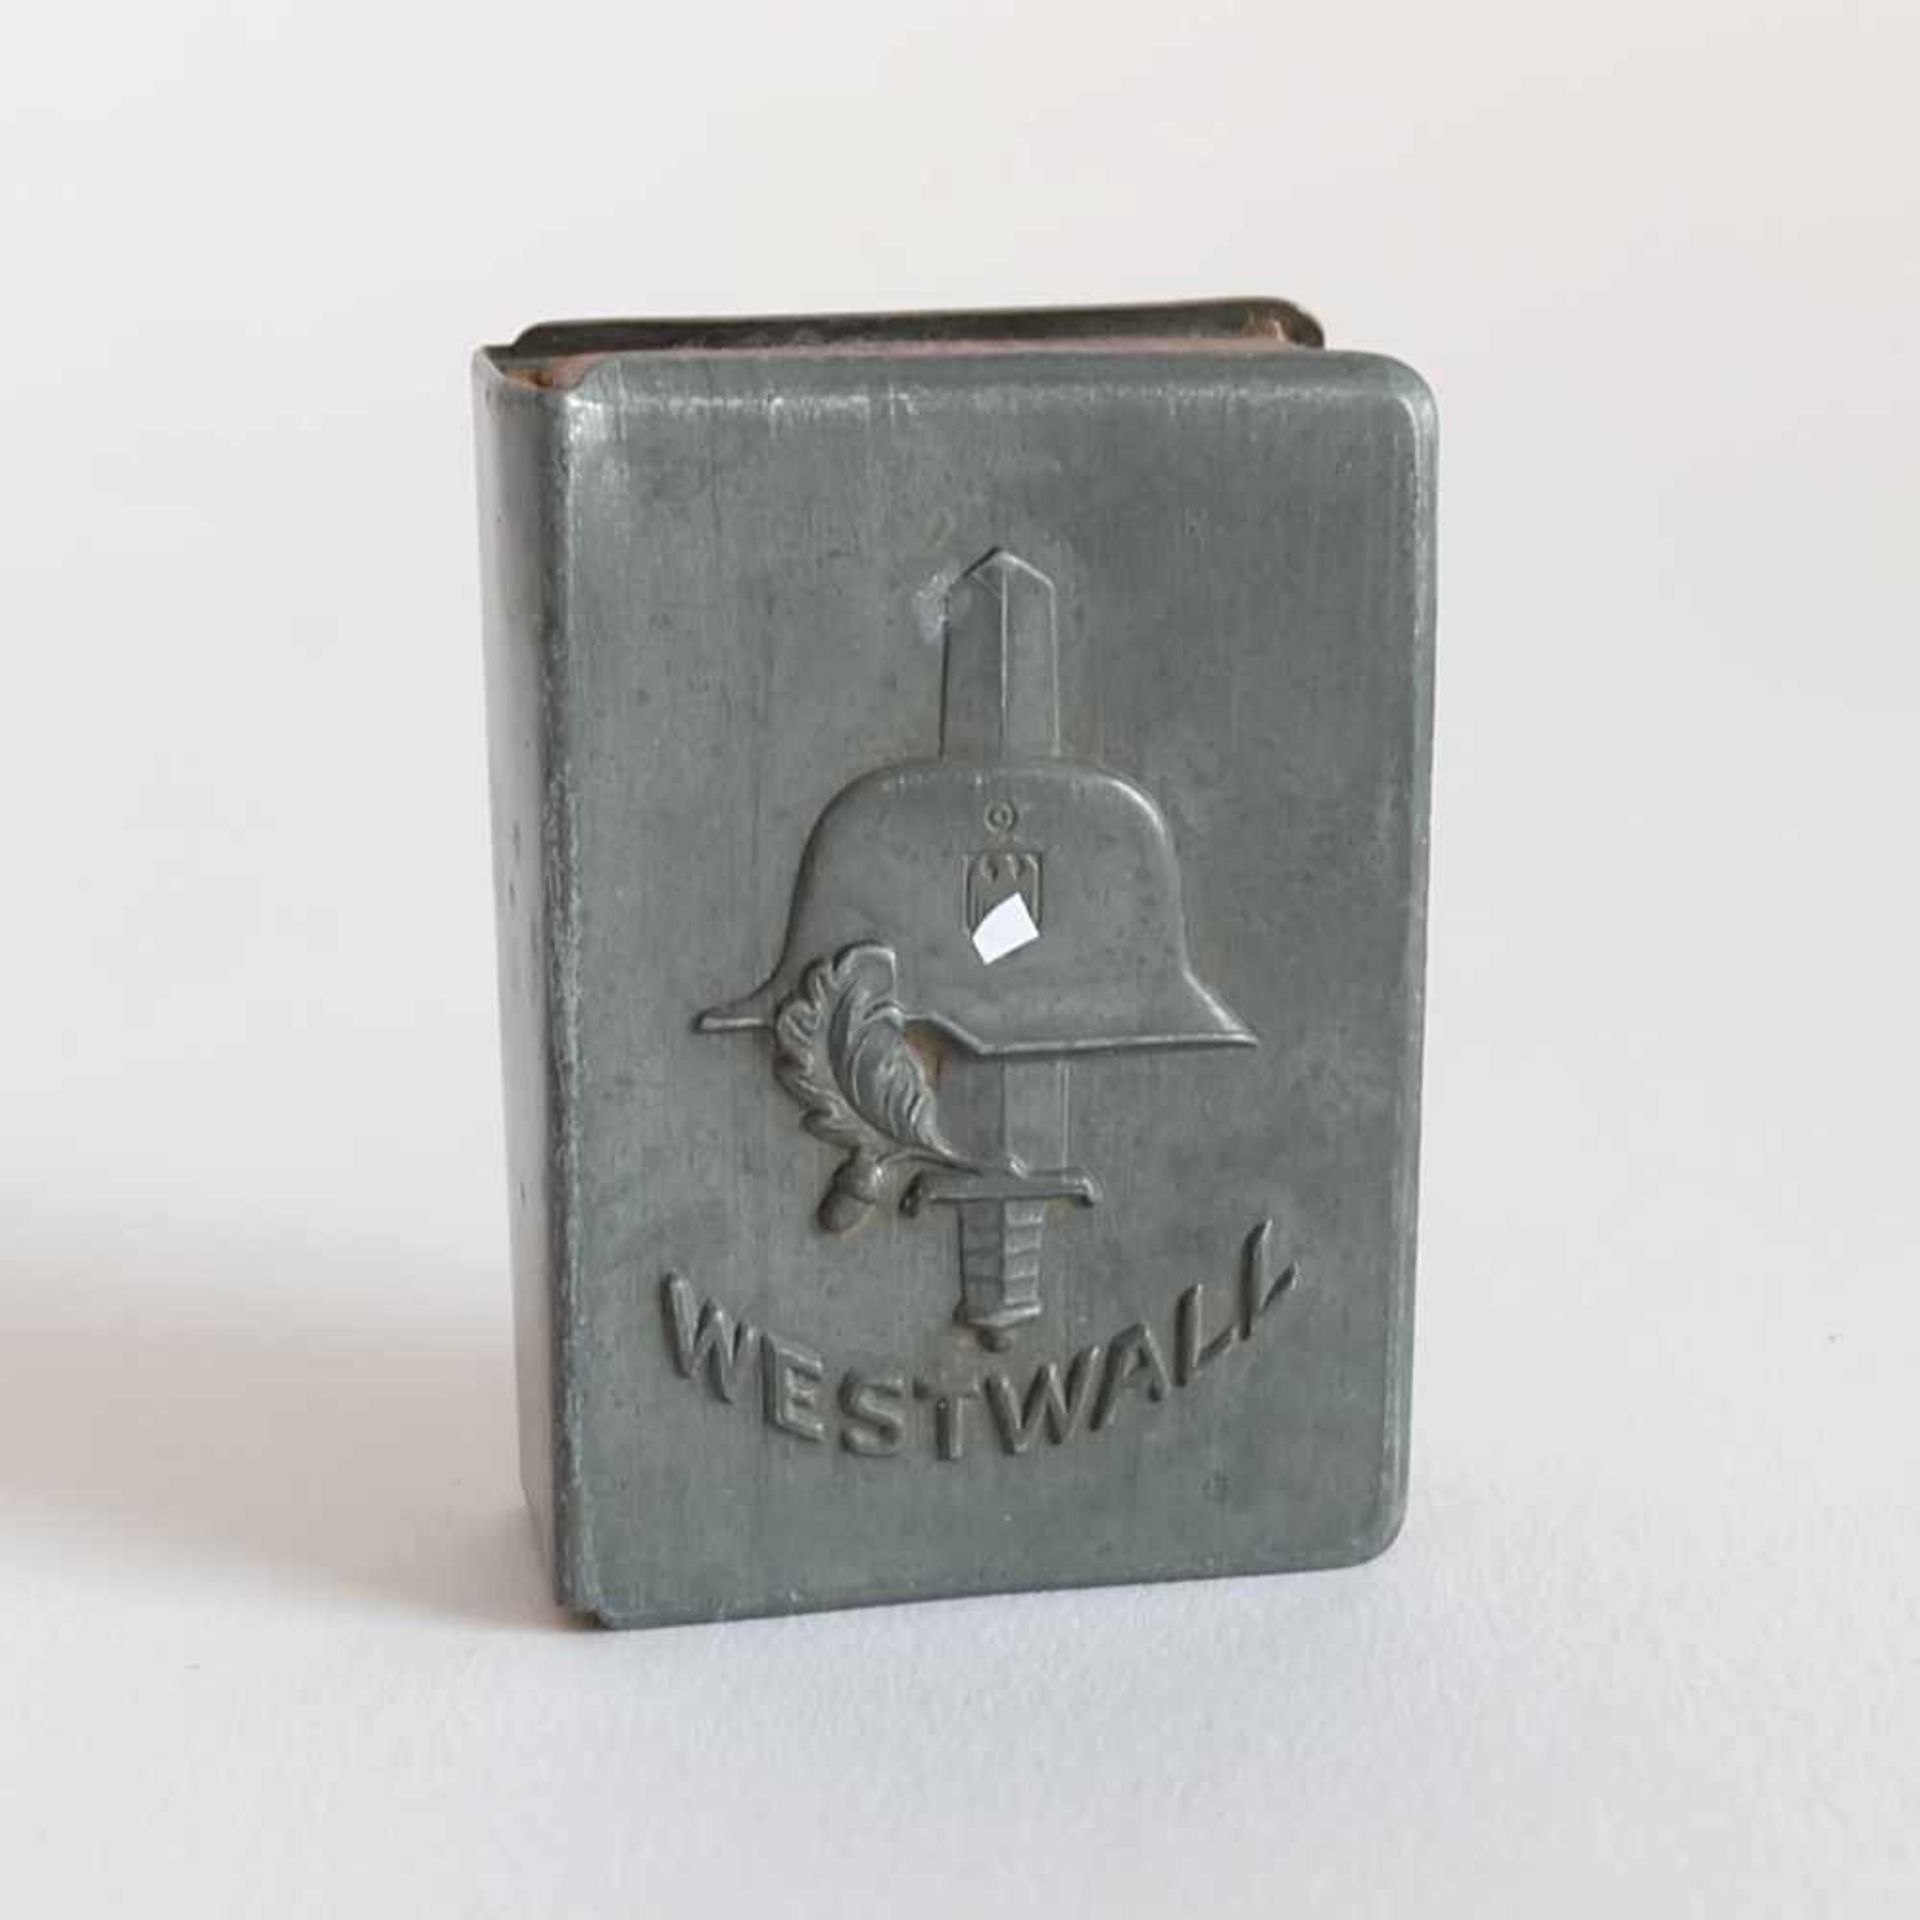 STREICHHOLZSCHACHTELHALTER, "Westwall", DR, 1939-45, Zinn, Relief Stahlhelm mit Schwert, Eichenlaub